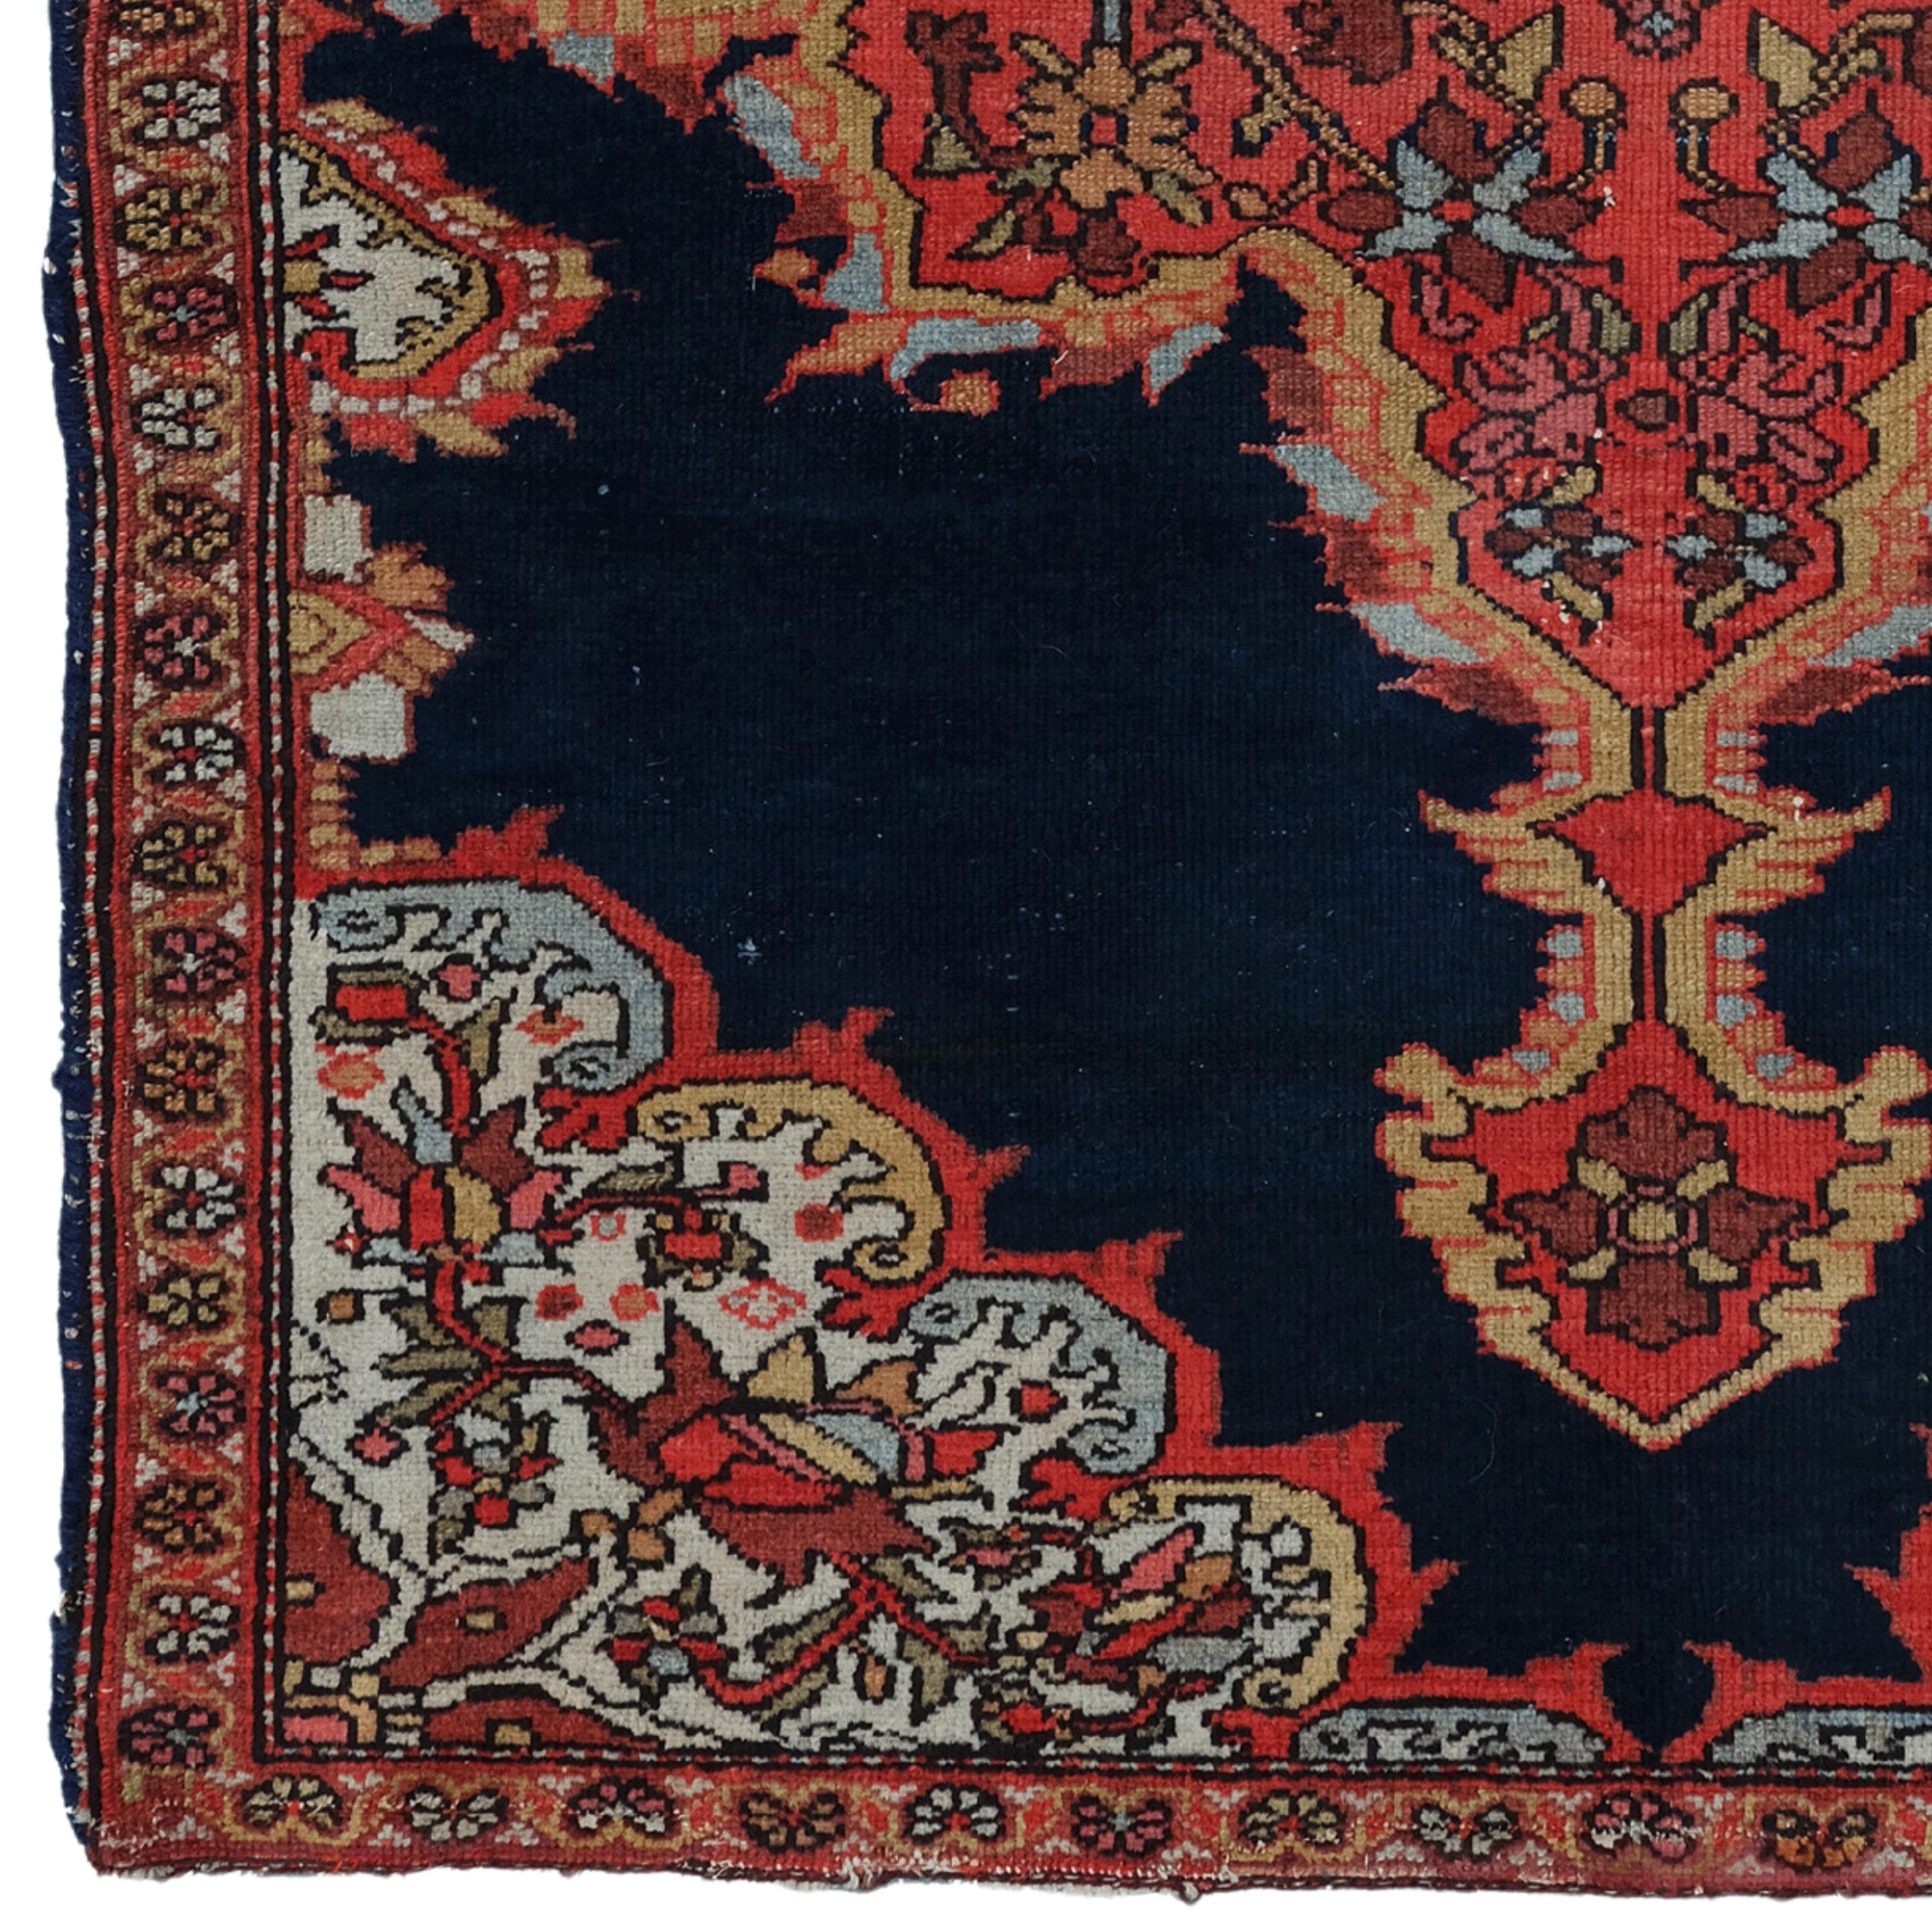 Dieser elegante Melayer-Teppich aus dem 19. Jahrhundert ist ein Beispiel für die exquisite Handwerkskunst seiner Zeit. Mit seiner reichen Geschichte und seinem raffinierten Design verleiht er jedem Raum eine edle Note. Kräftige rote und goldene